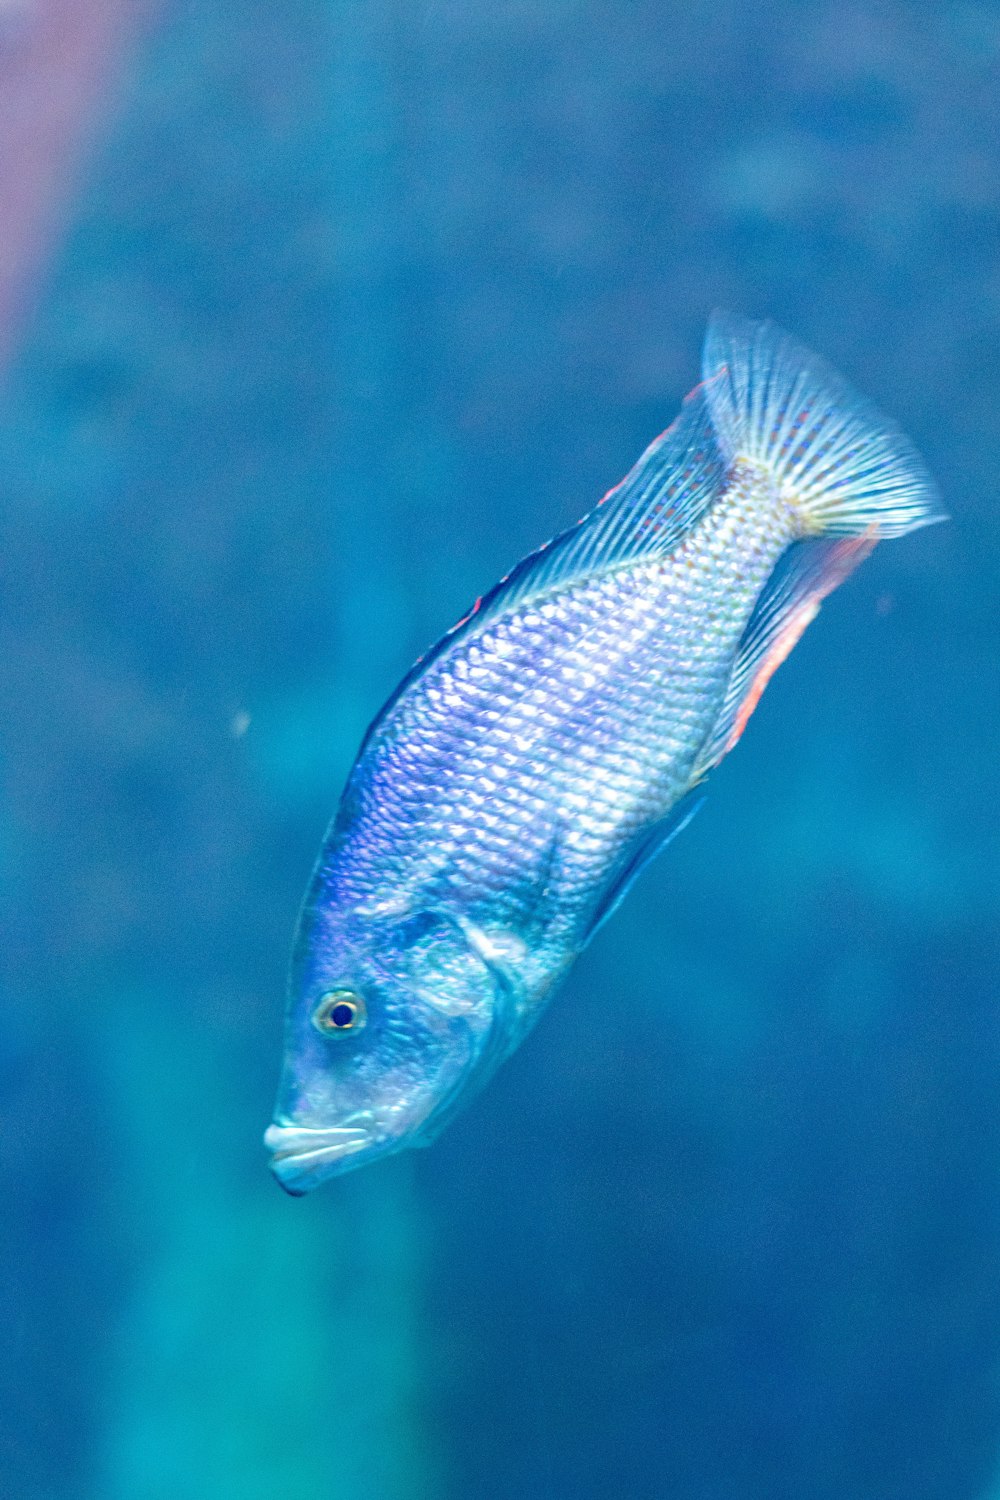 Un pez azul nadando en el agua